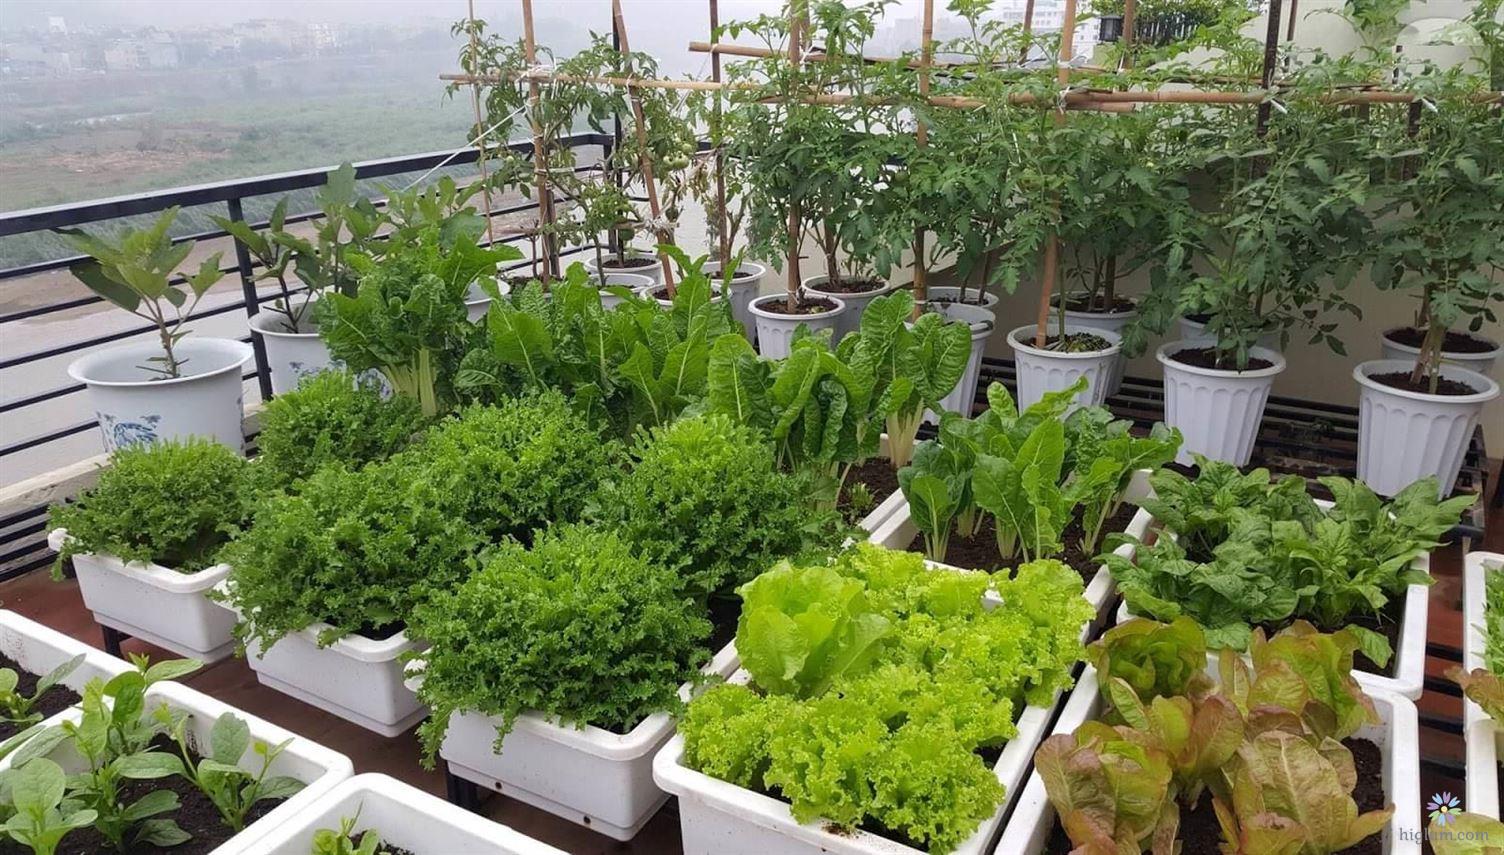 Phủ xanh khu vườn nhà bạn bằng các loại rau yêu thích (Ảnh: Internet)